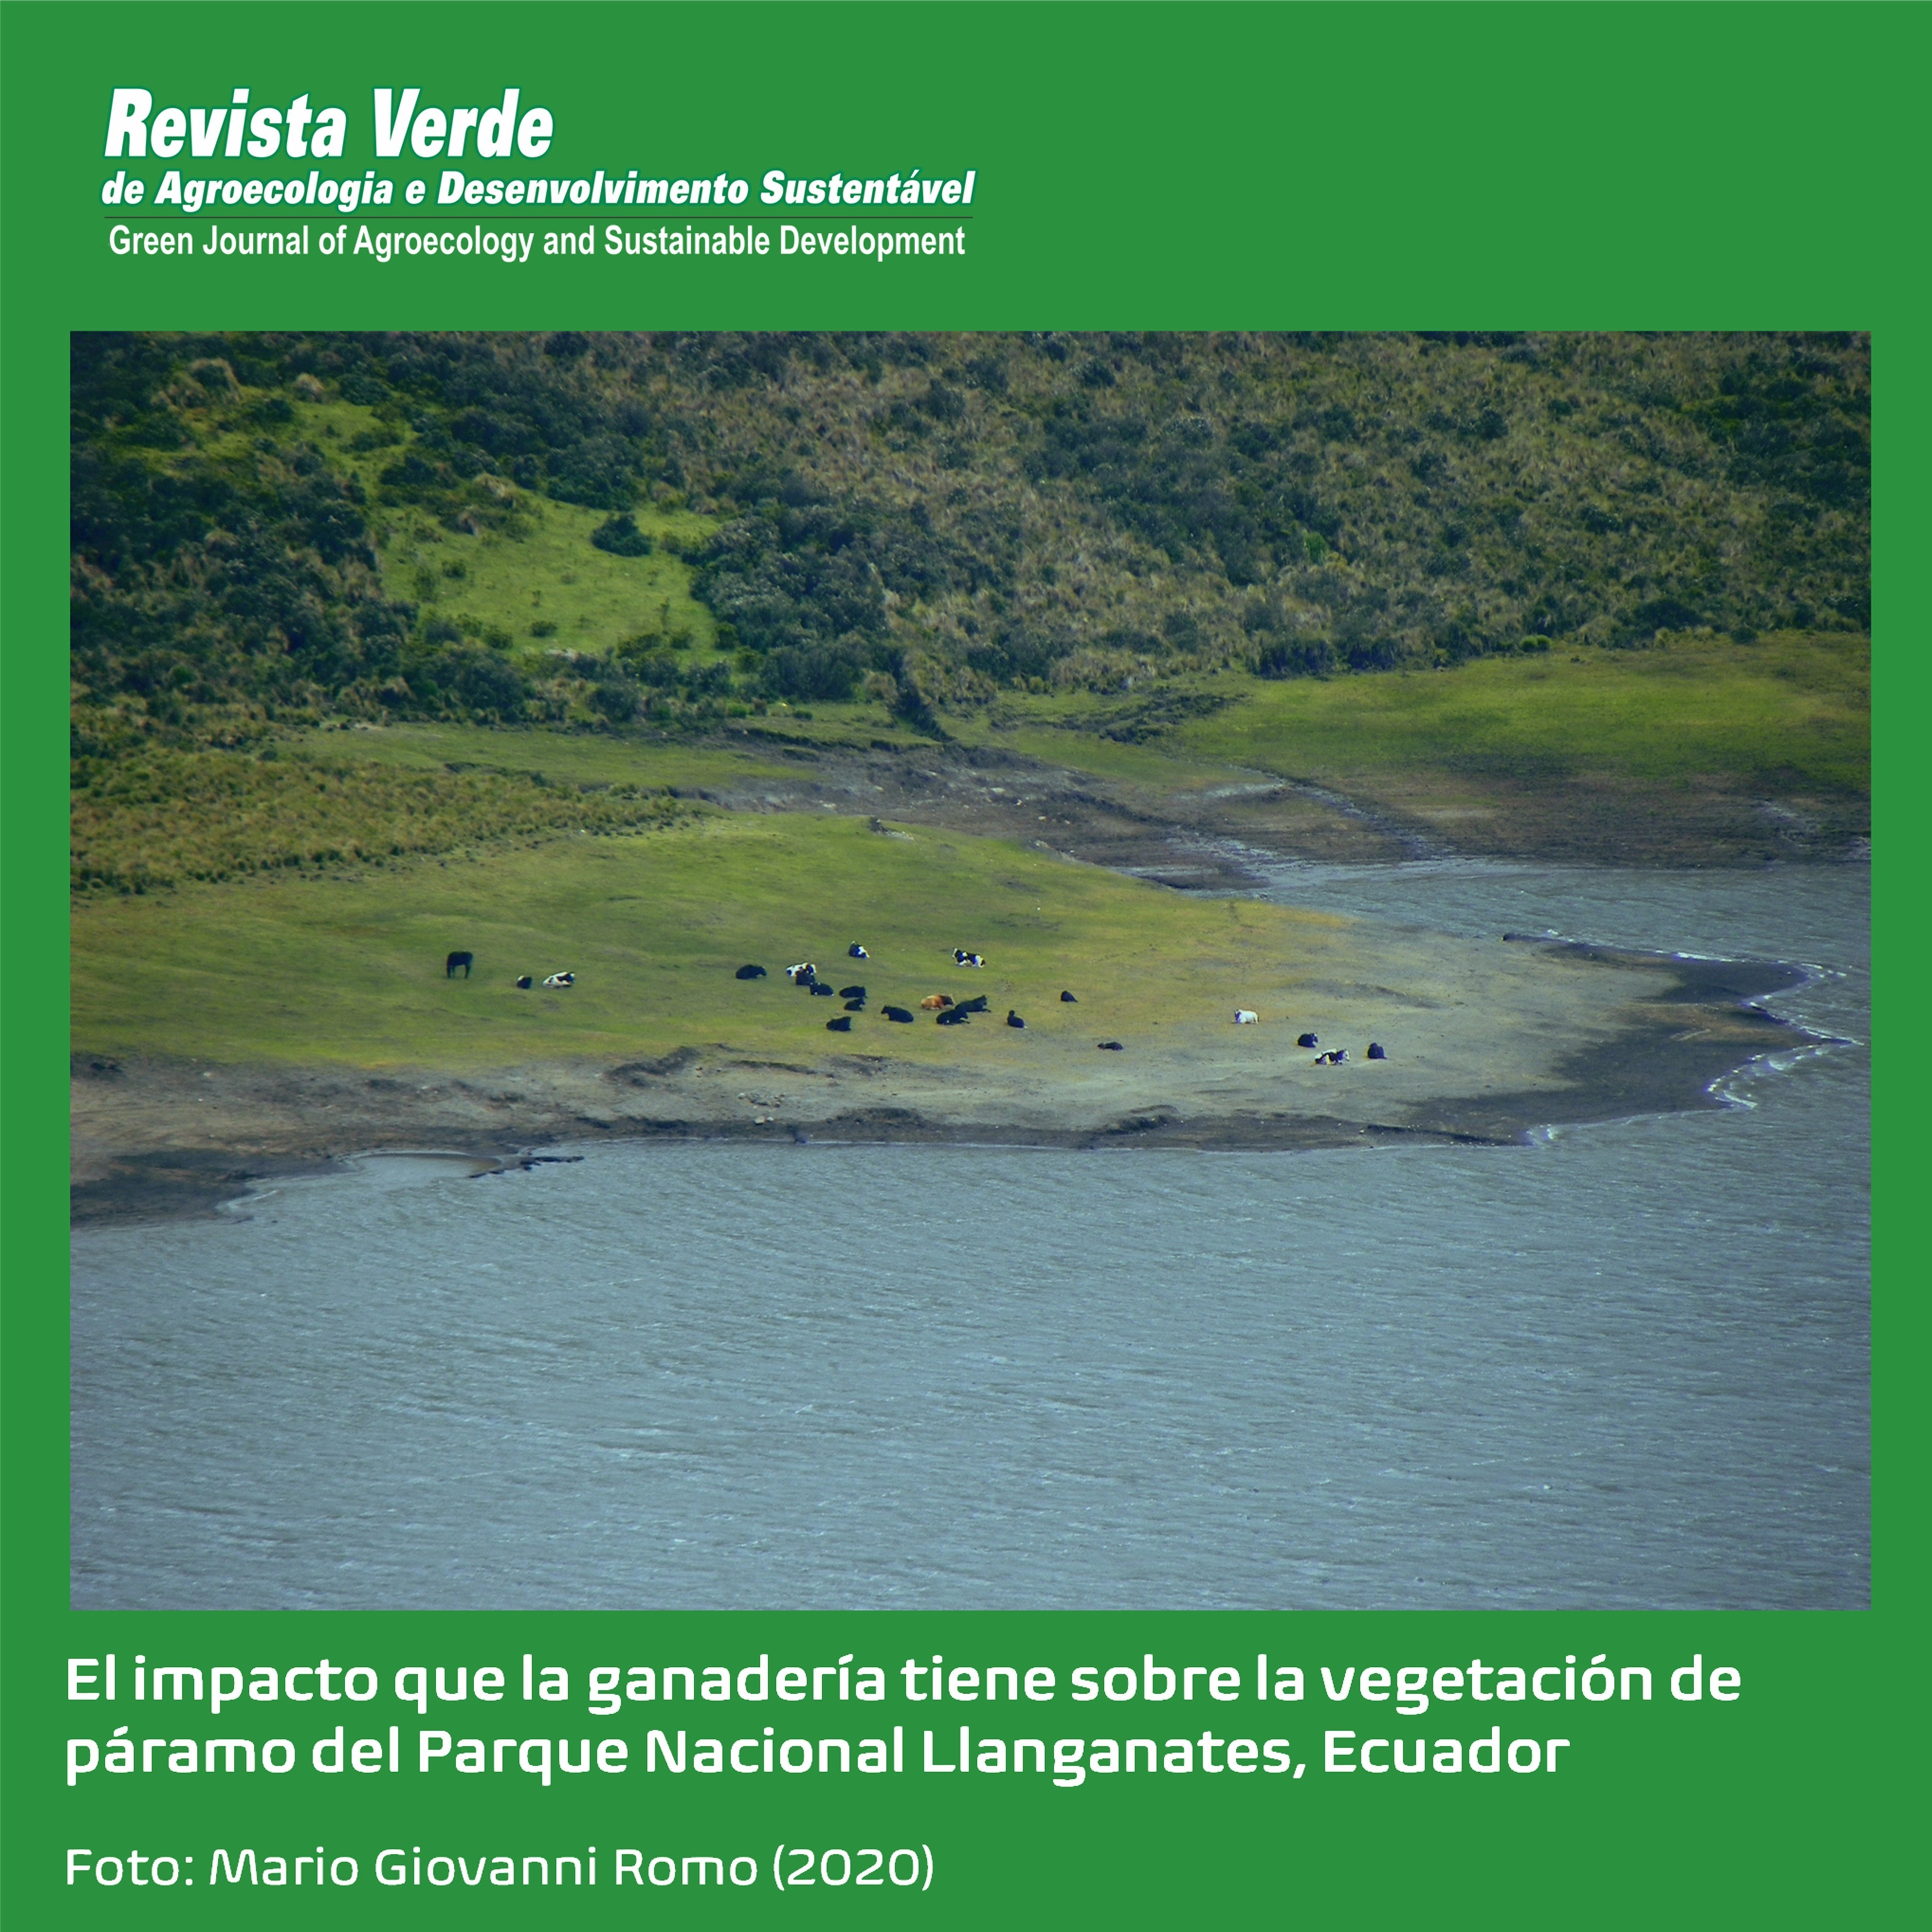 Degradación de la vegetación de páramo por efecto de la ganadería en el Parque Nacional Llanganates, Ecuador